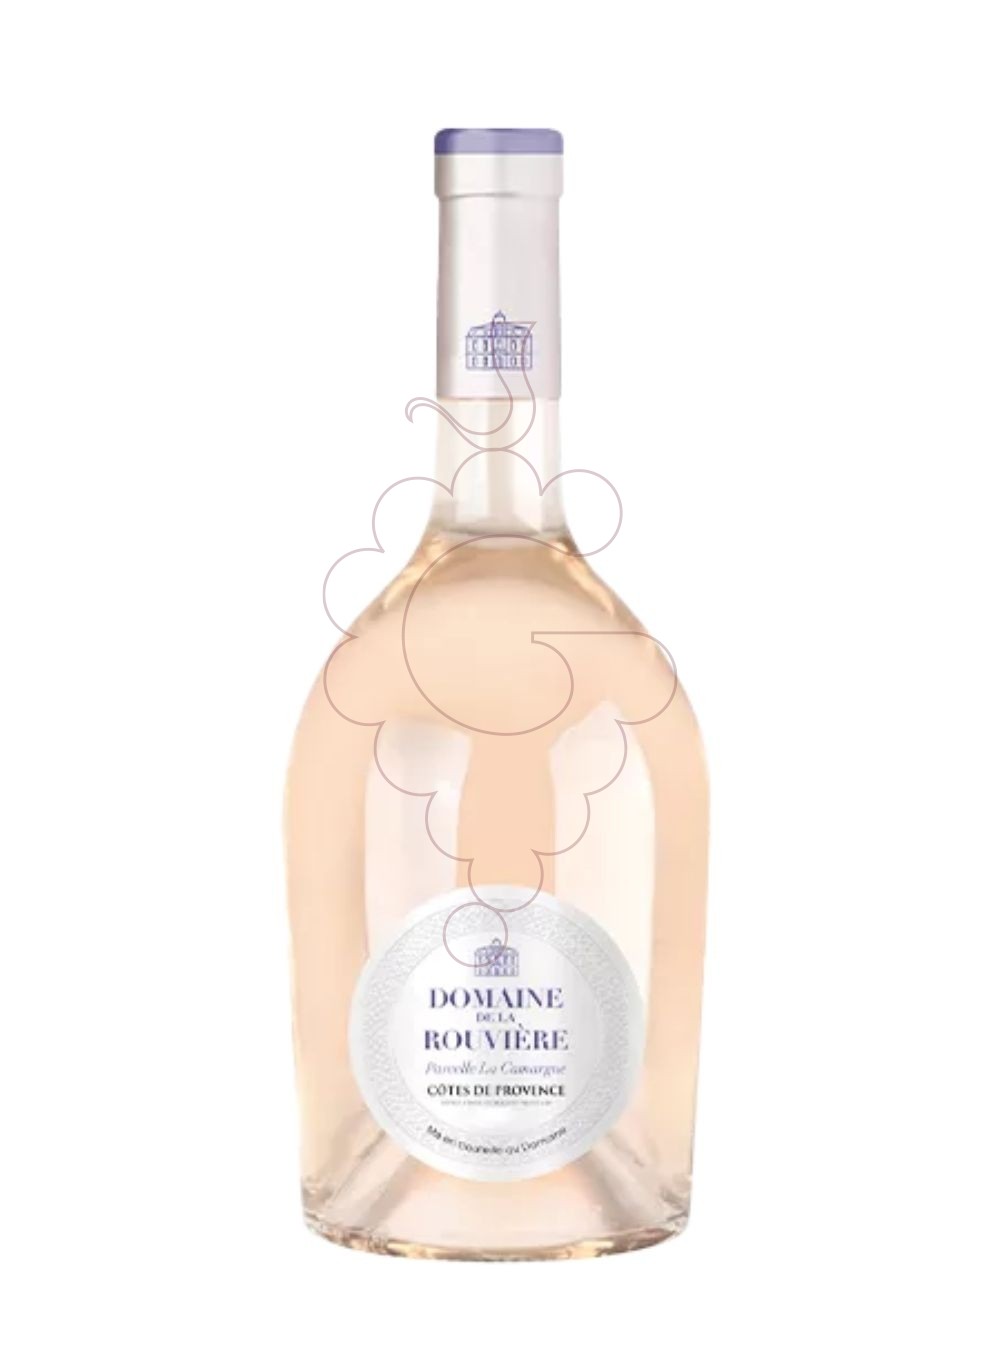 Photo Domaine bouviere provence rose vin rosé